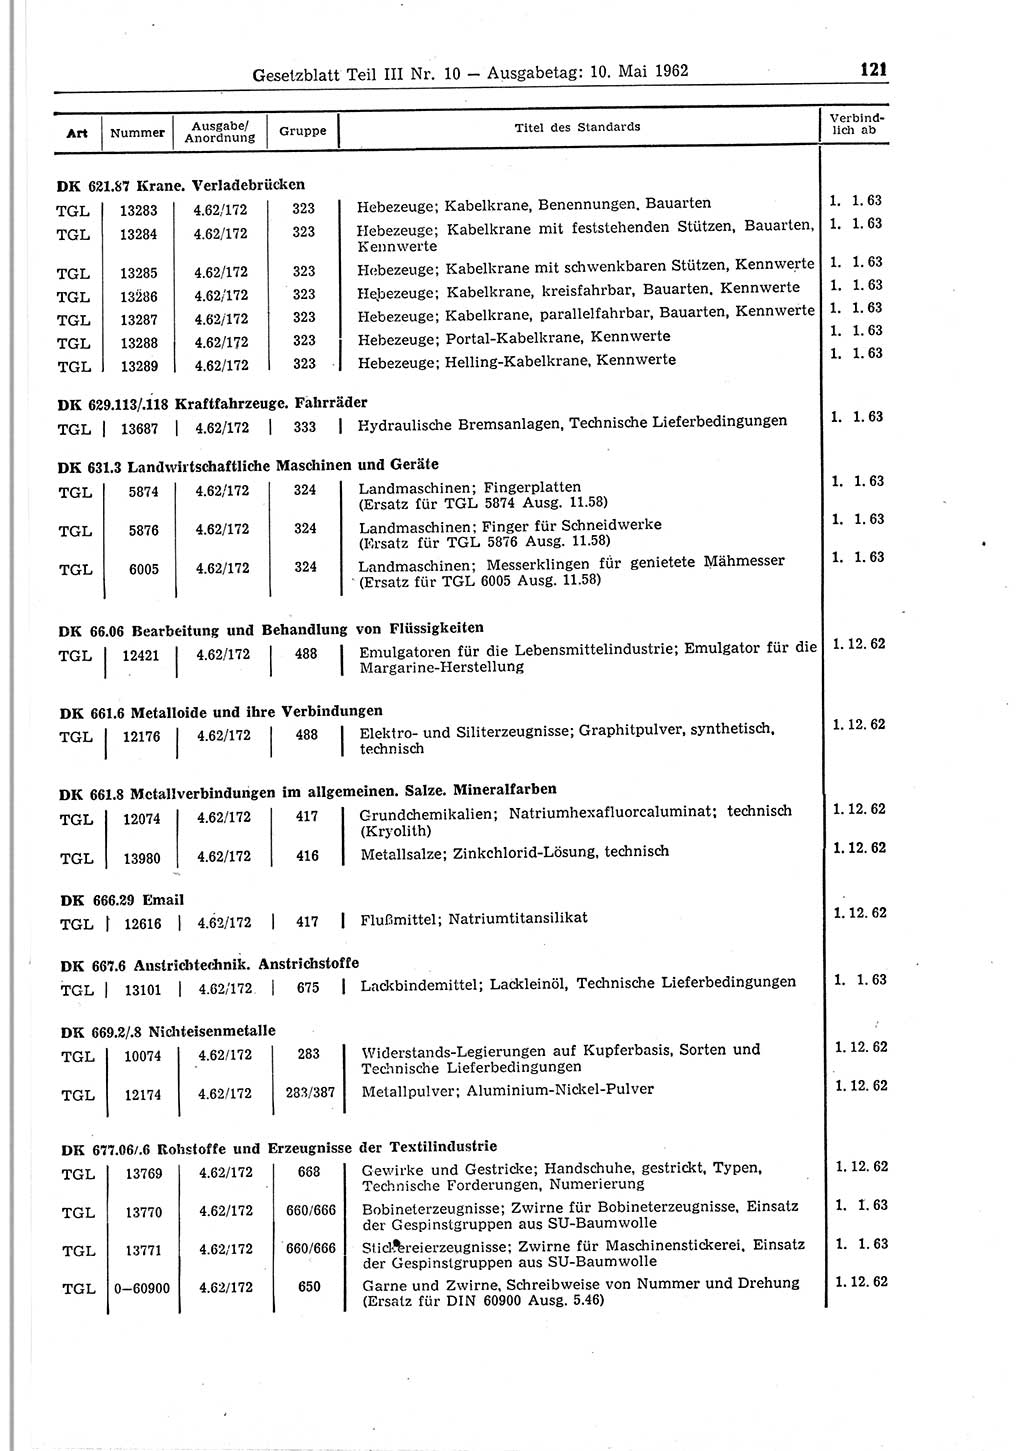 Gesetzblatt (GBl.) der Deutschen Demokratischen Republik (DDR) Teil ⅠⅠⅠ 1962, Seite 121 (GBl. DDR ⅠⅠⅠ 1962, S. 121)